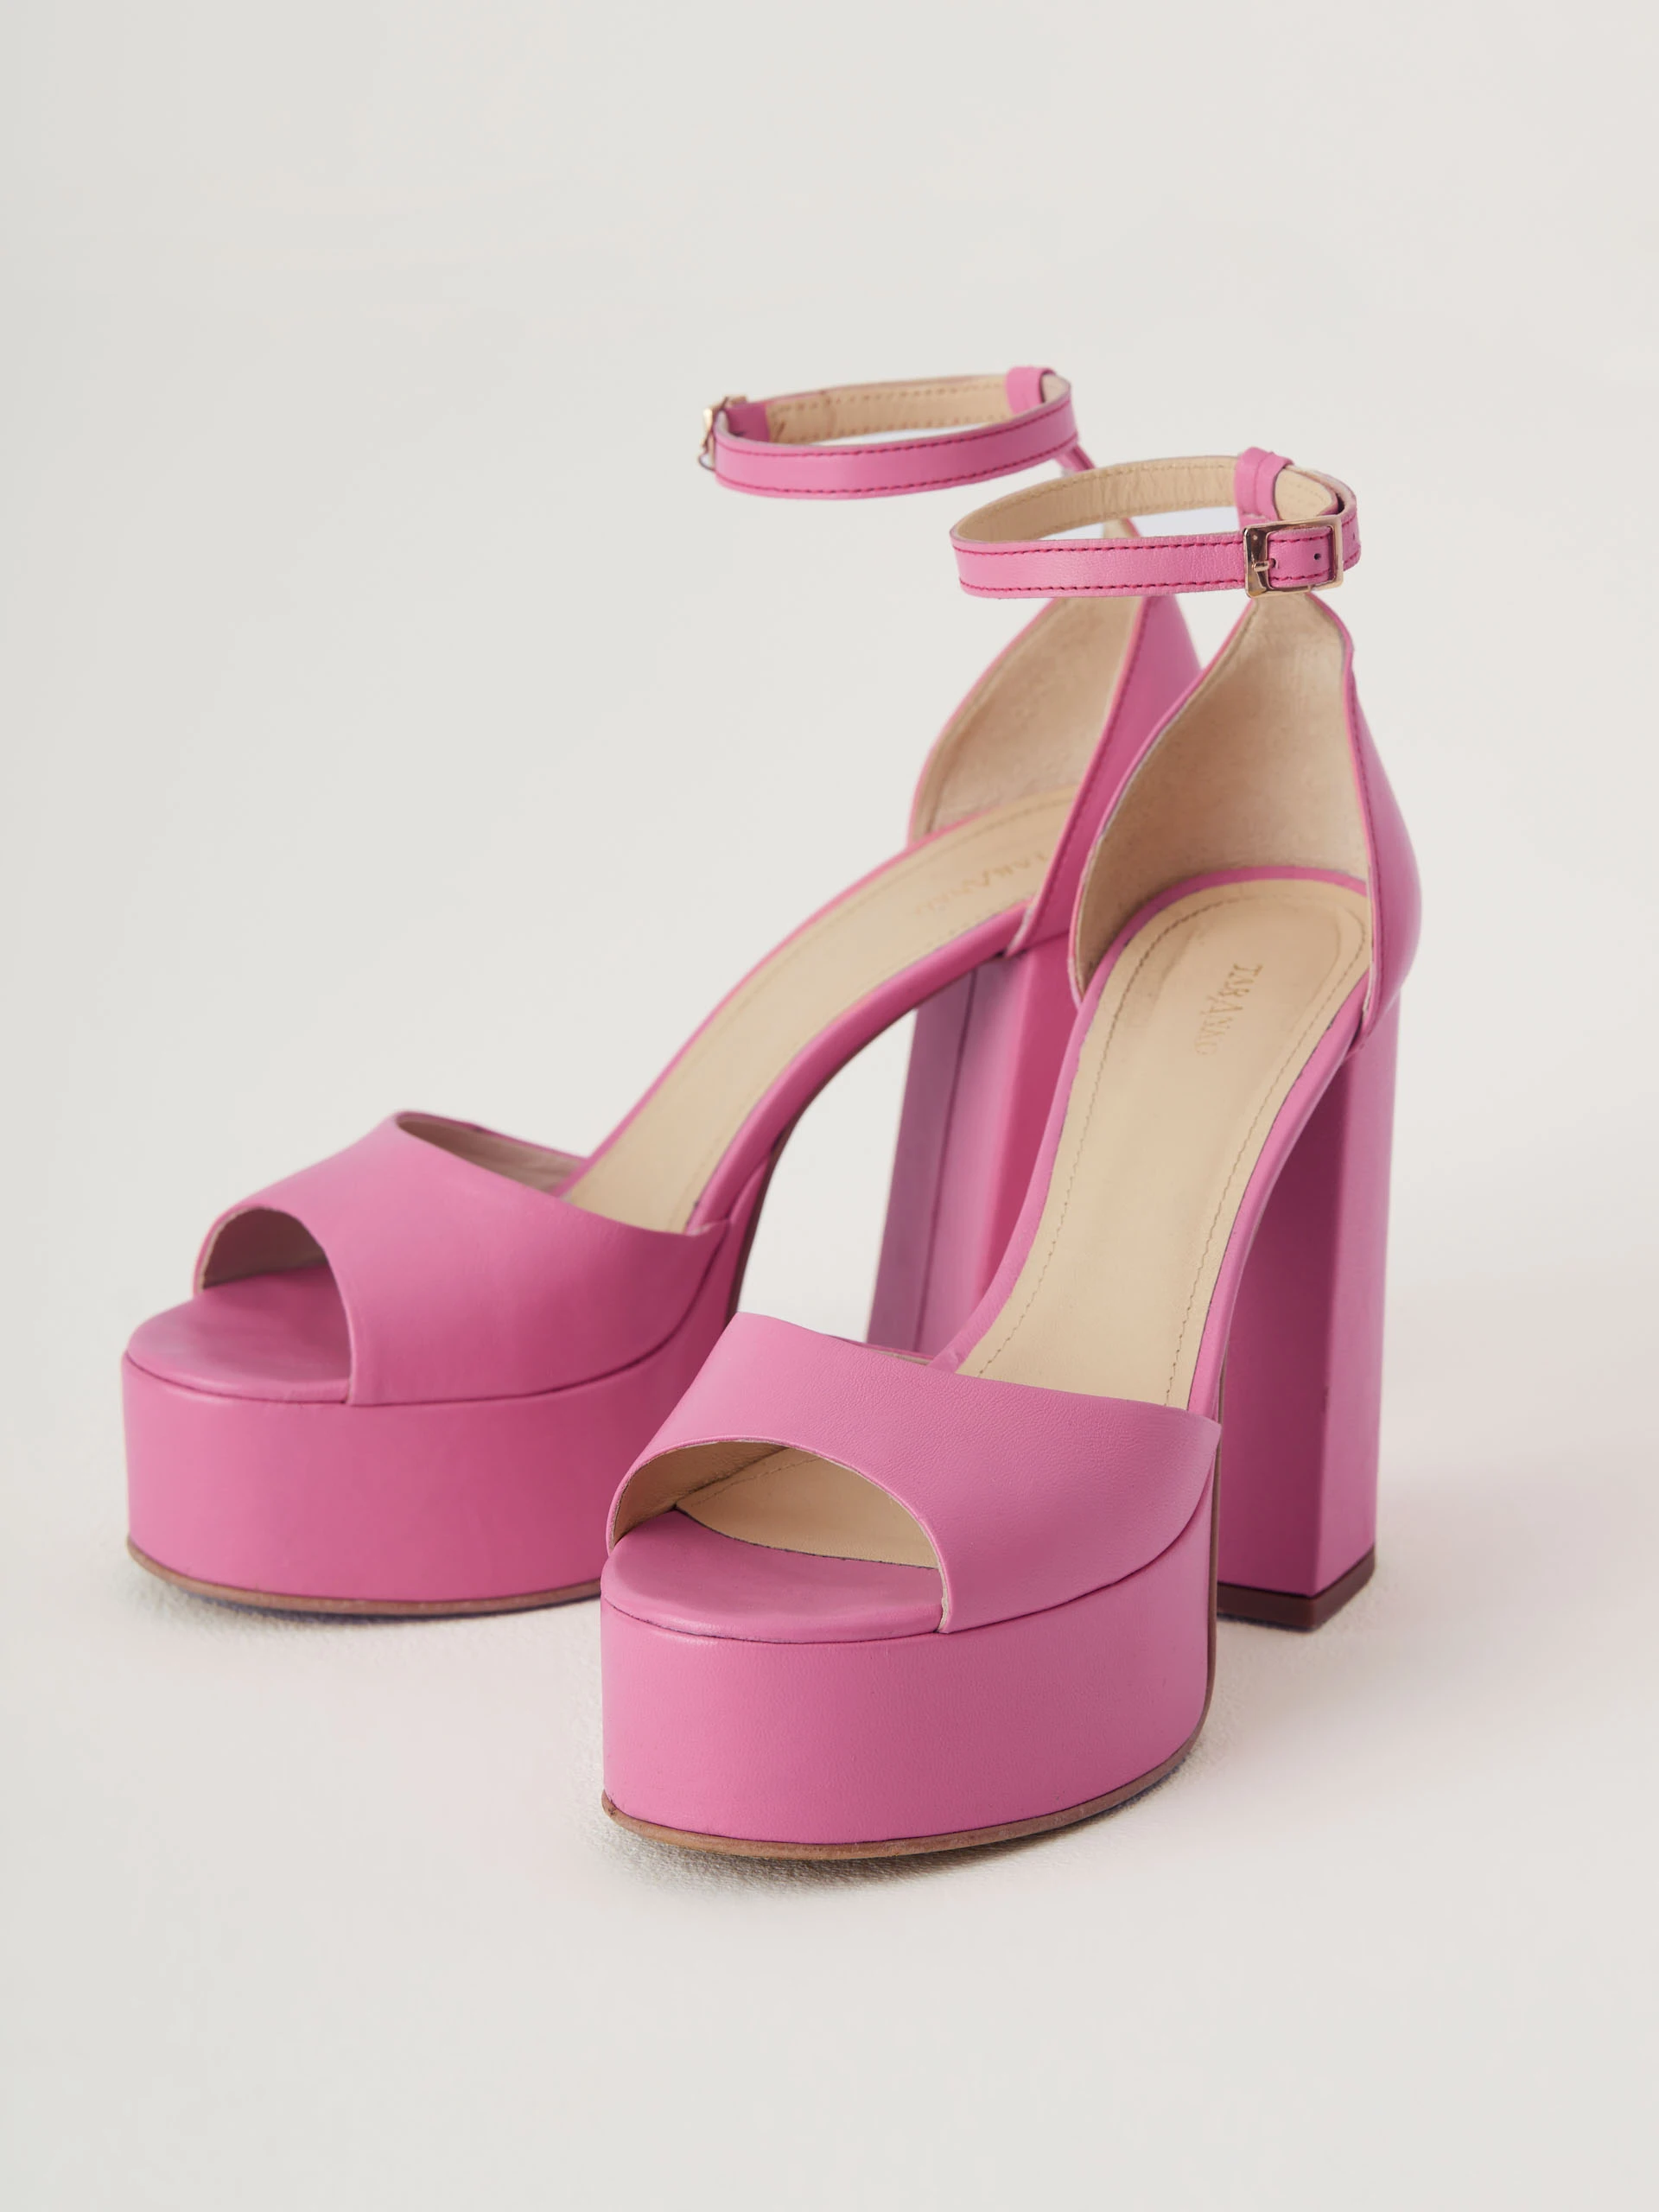 Pink leather platform sandals